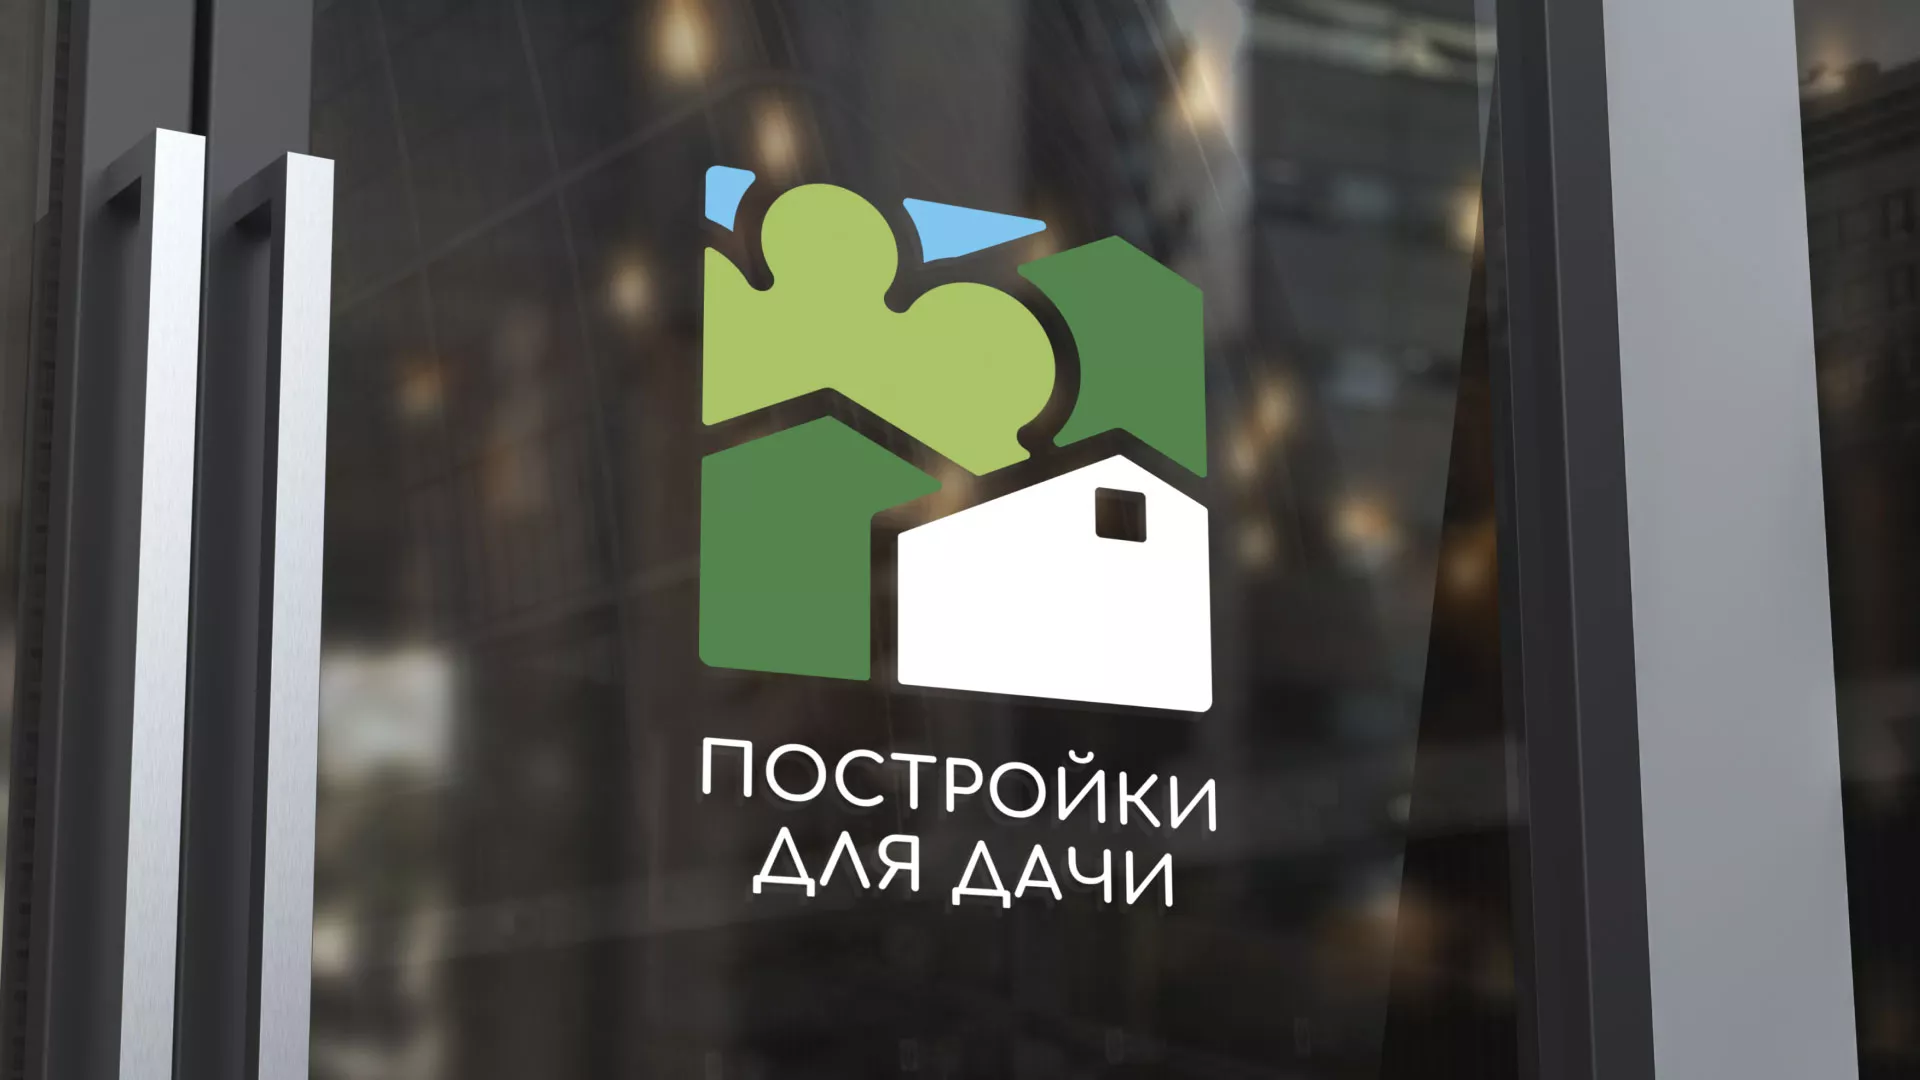 Разработка логотипа в Усть-Джегуте для компании «Постройки для дачи»